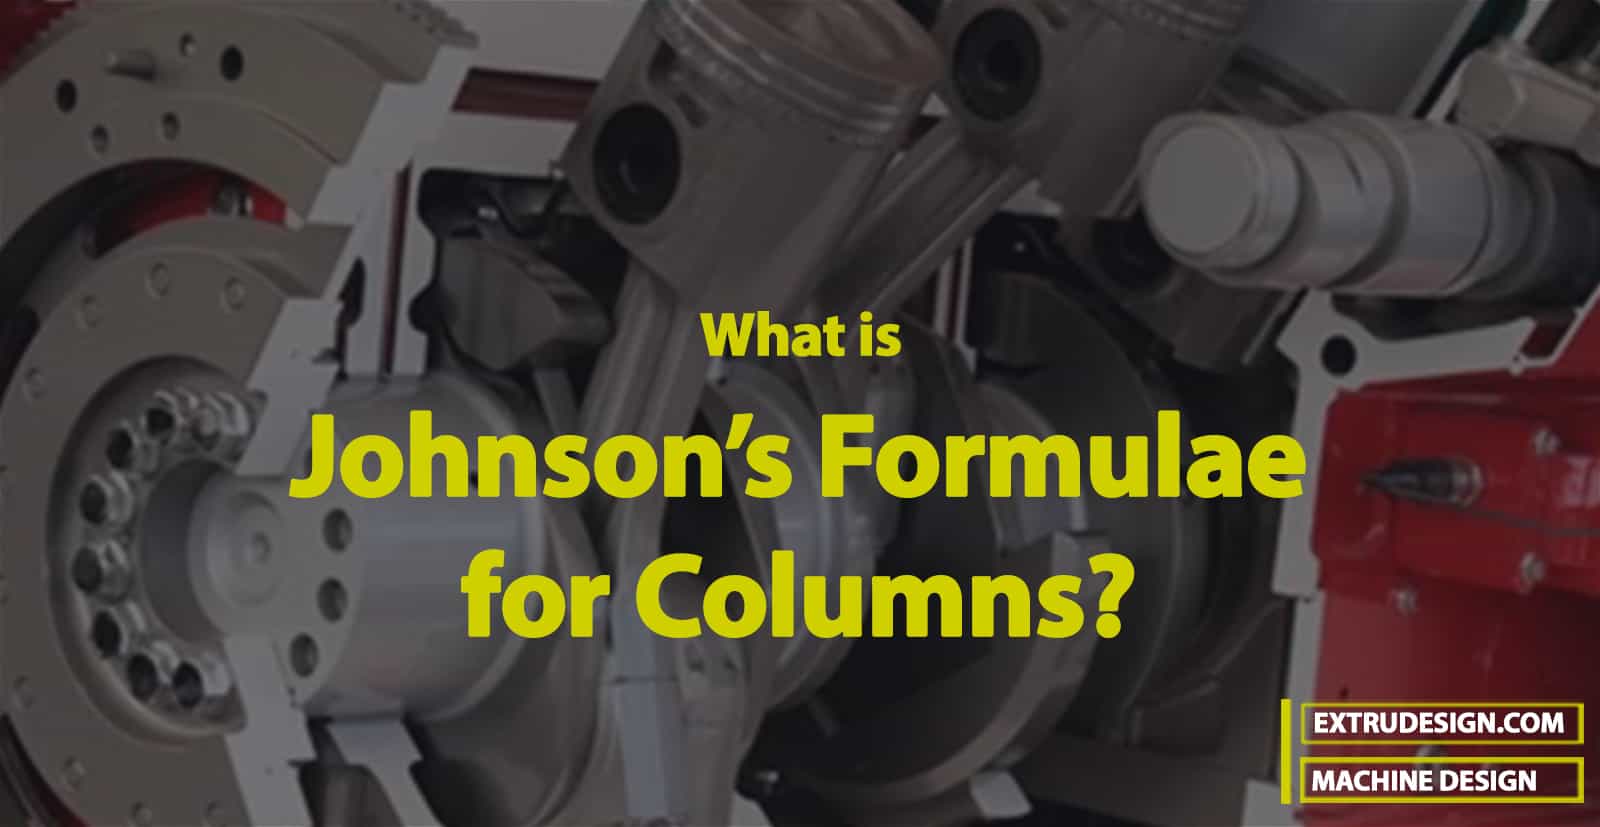 Johnson’s Formulae for Columns